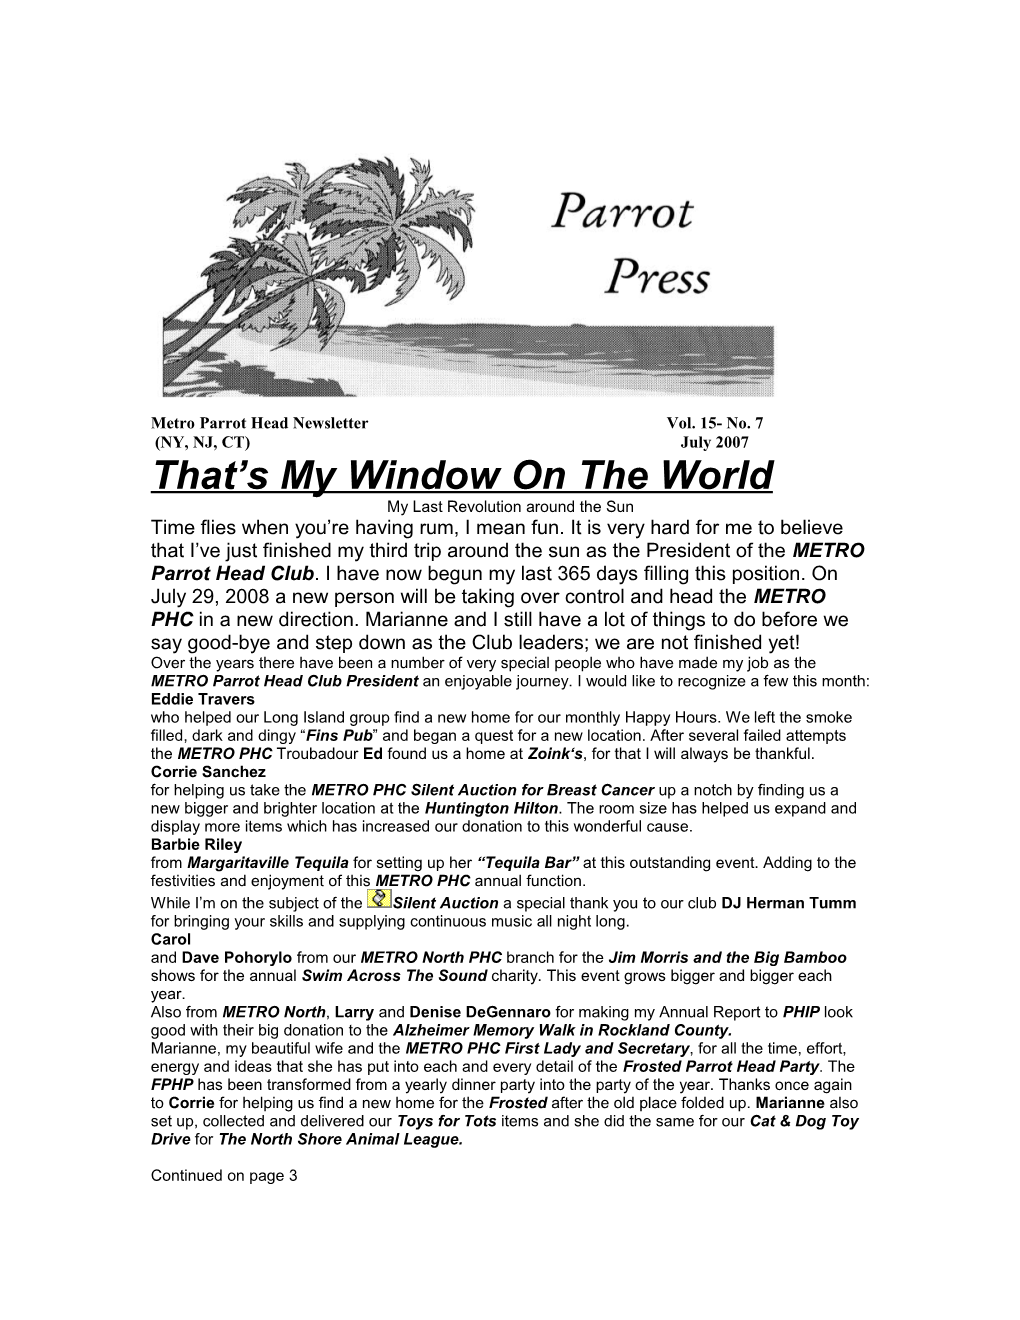 Metro Parrot Head Newsletter Vol. 15- No. 7